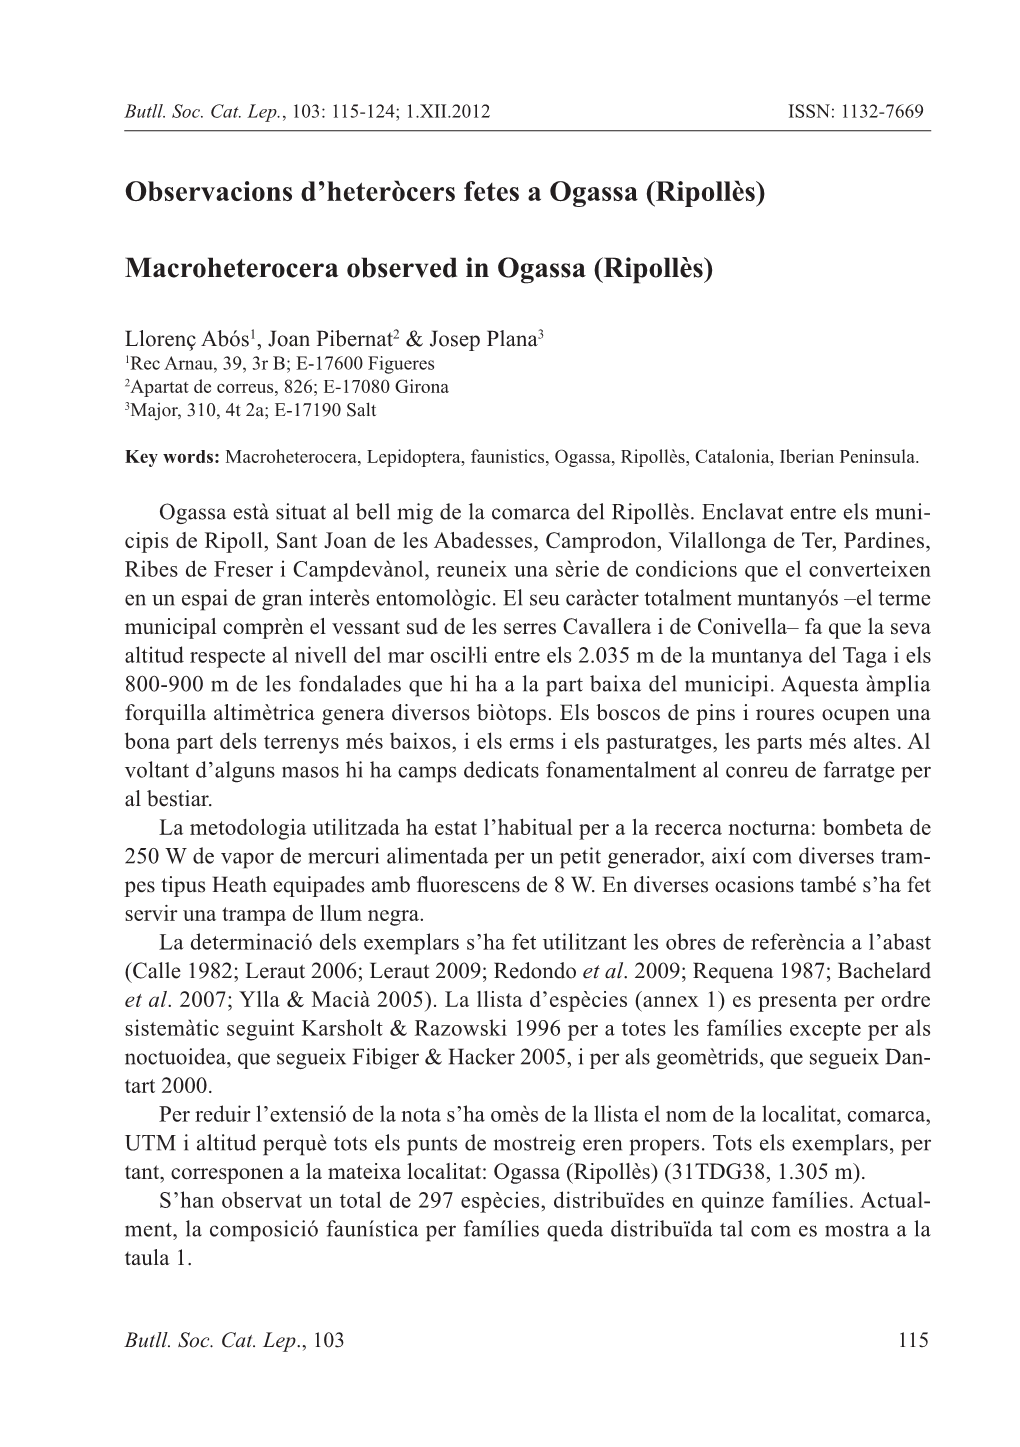 Observacions D'heteròcers Fetes a Ogassa (Ripollès) Macroheterocera